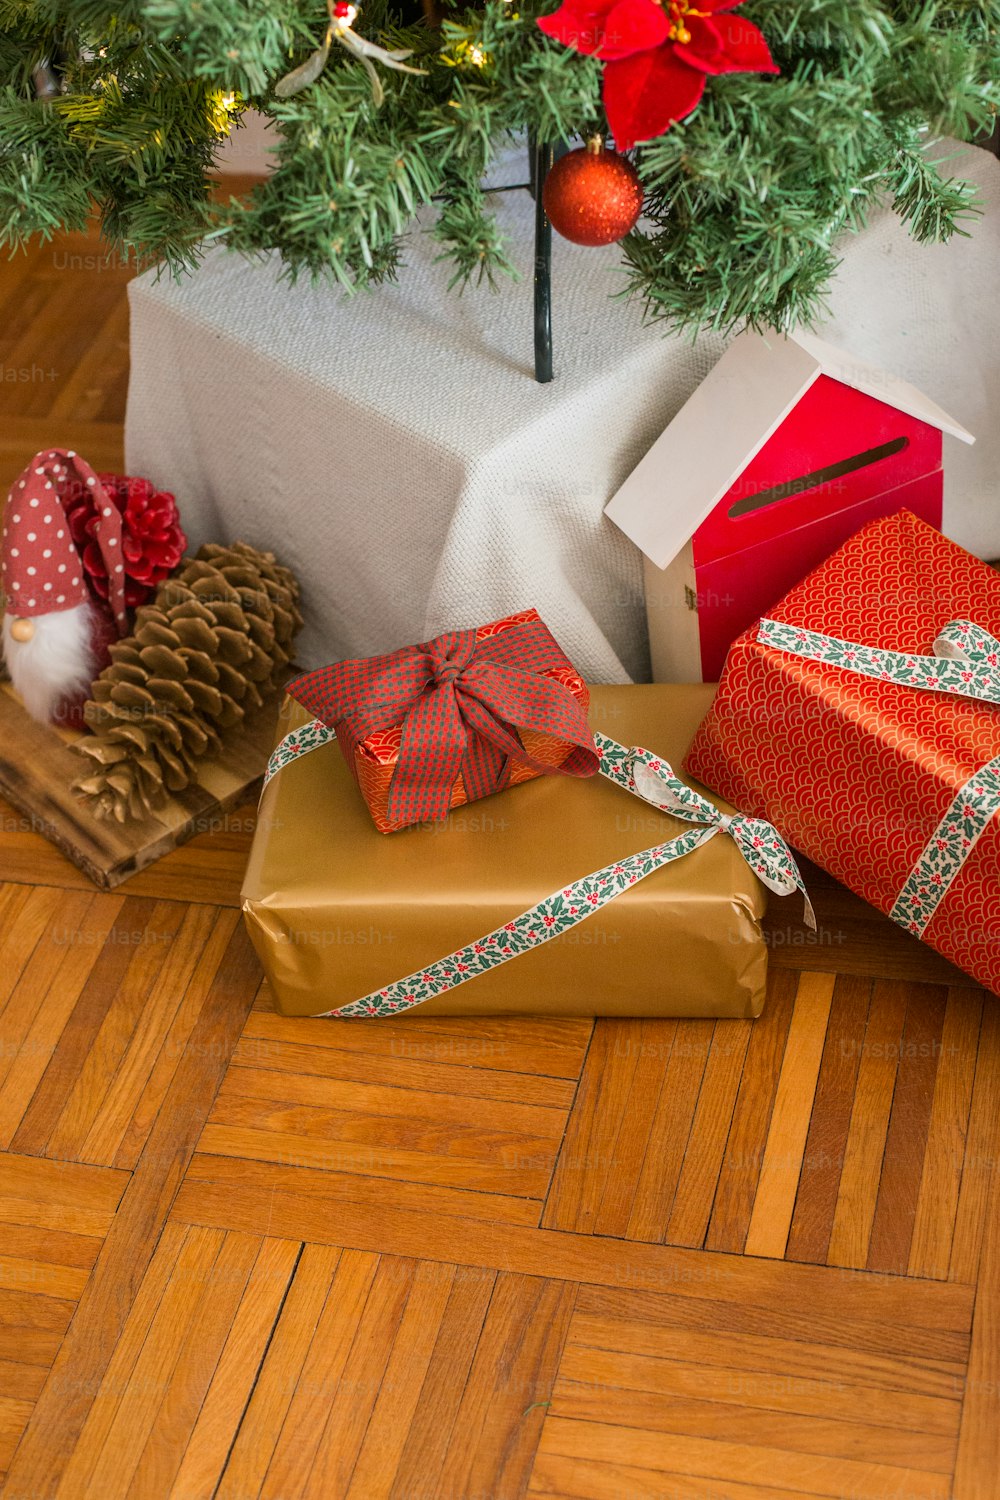 Geschenke unter einem Weihnachtsbaum auf einem Holzboden